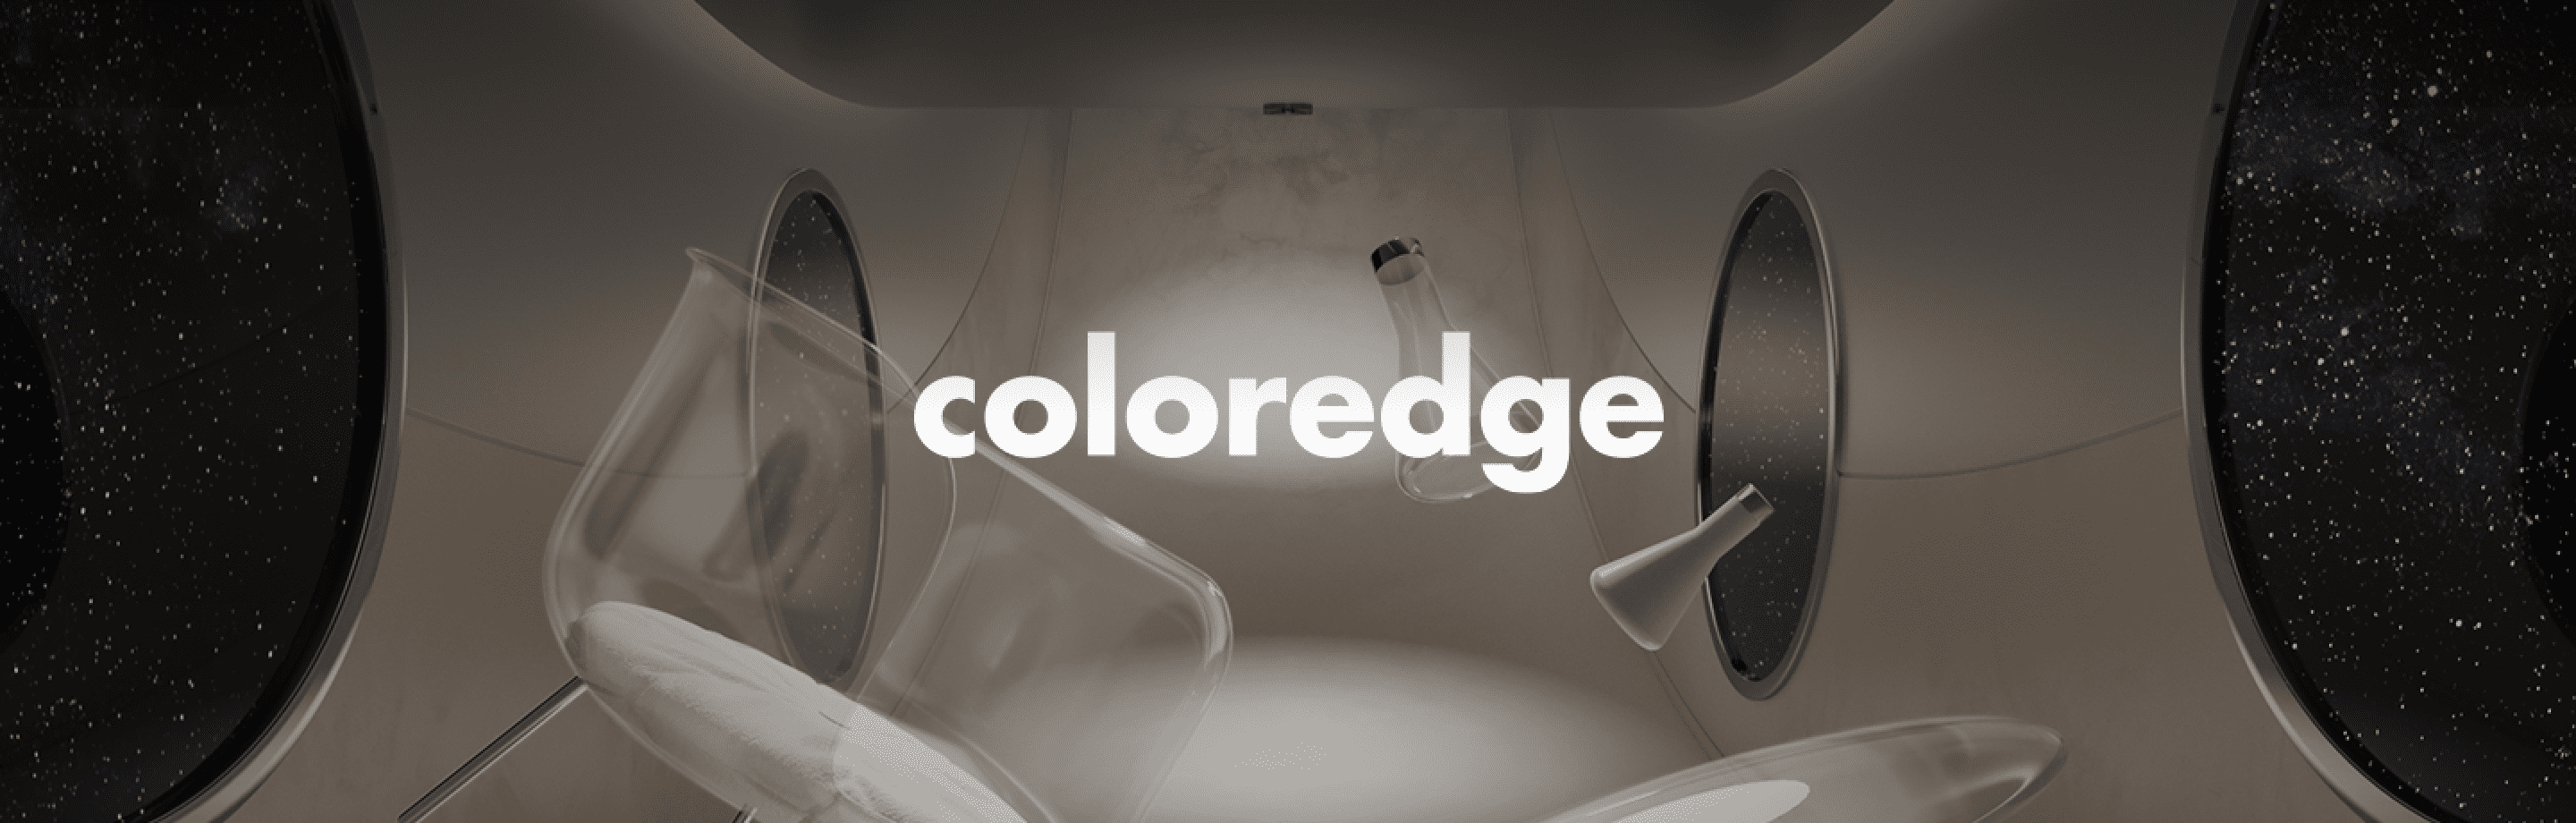 Coloredge project cover